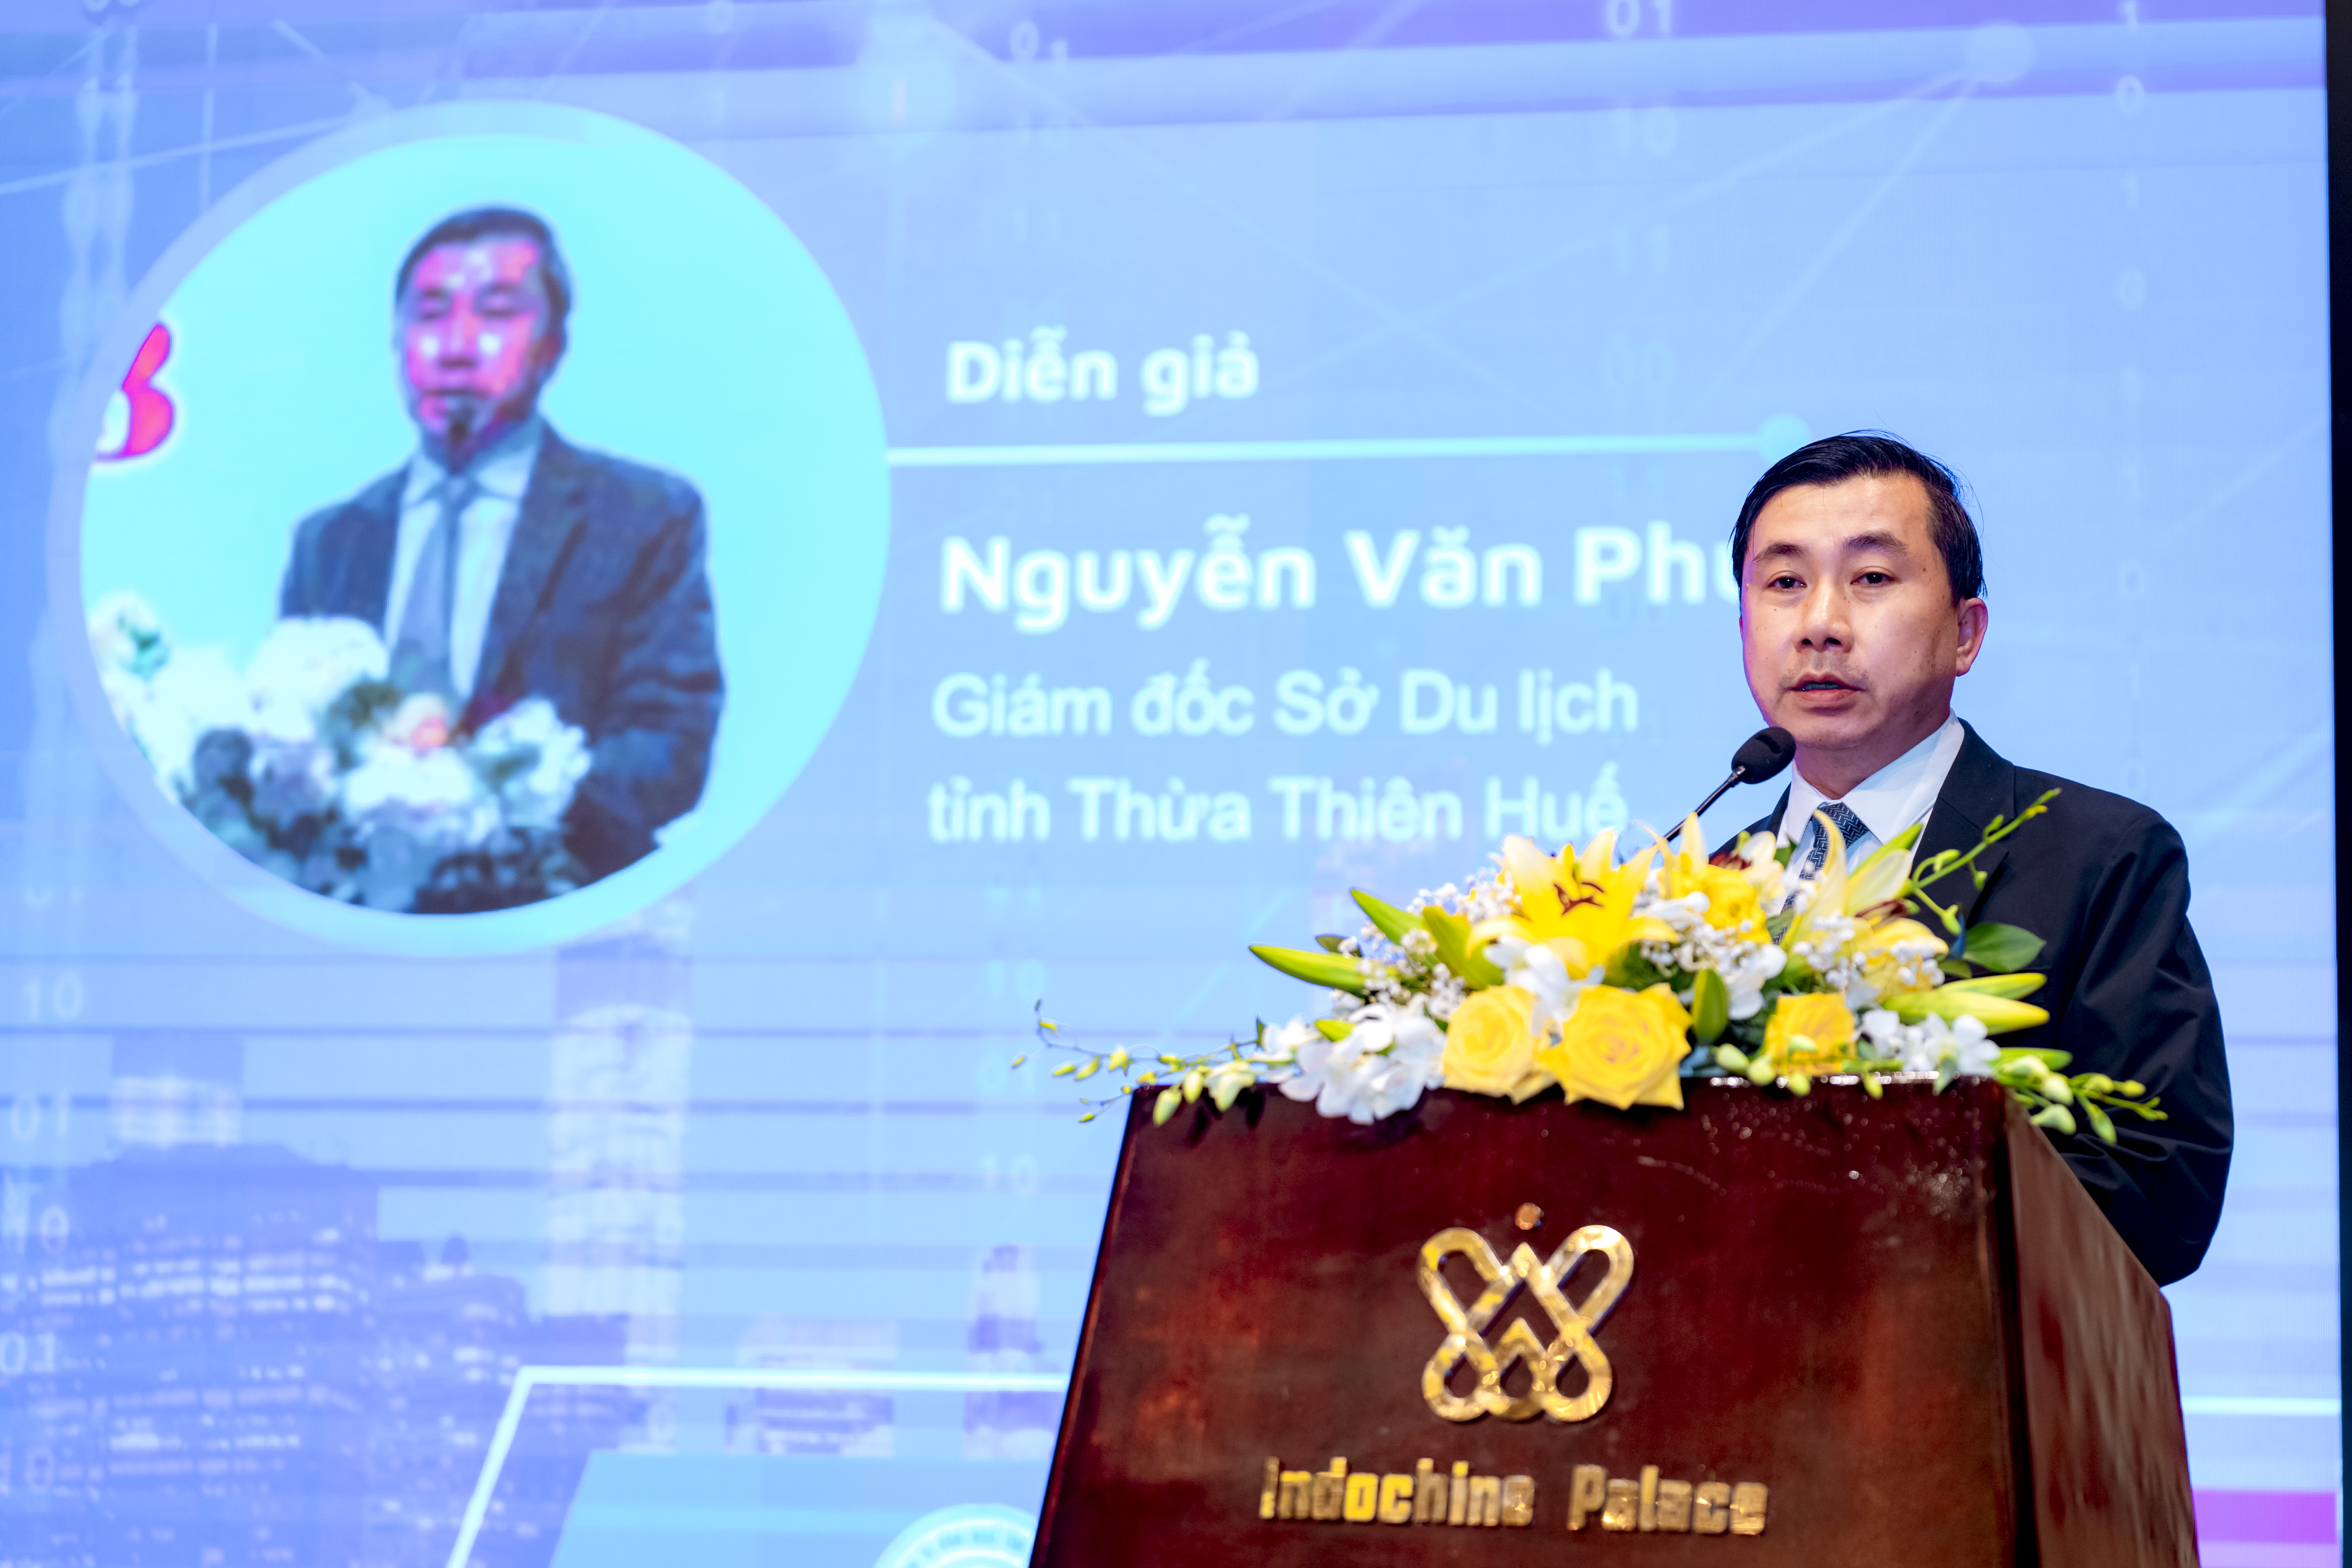 Giám đốc Sở Du lịch Thừa Thiên Huế Nguyễn Văn Phúc phát biểu tại Diễn đàn